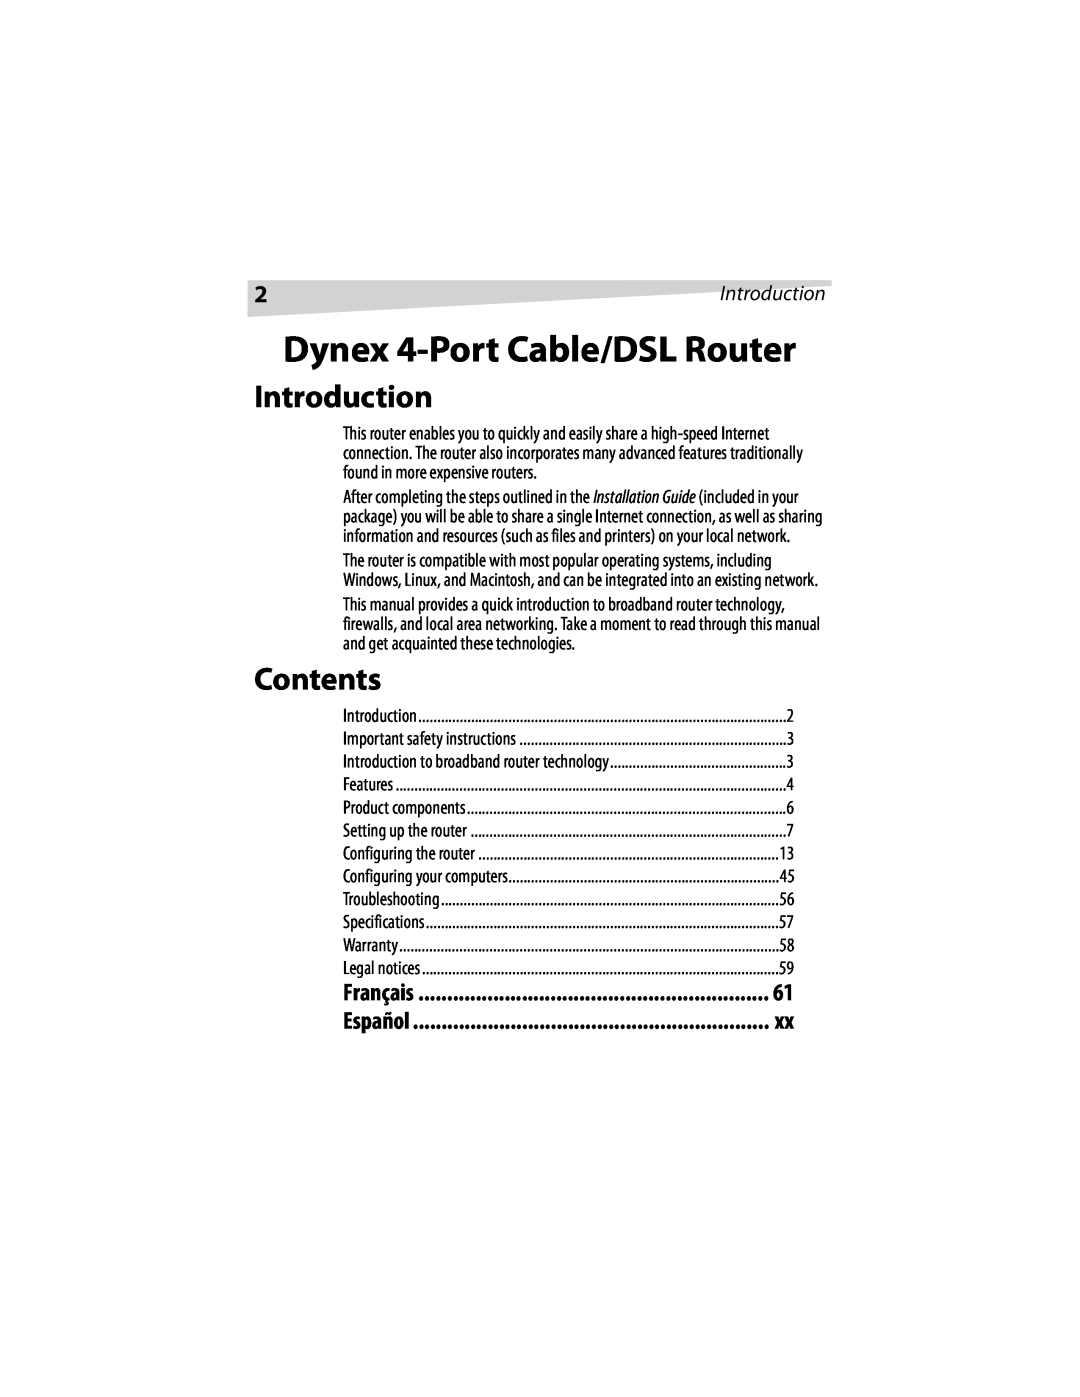 Dynex DX-E401 manual Introduction, Contents, Dynex 4-Port Cable/DSL Router, Français, Español 